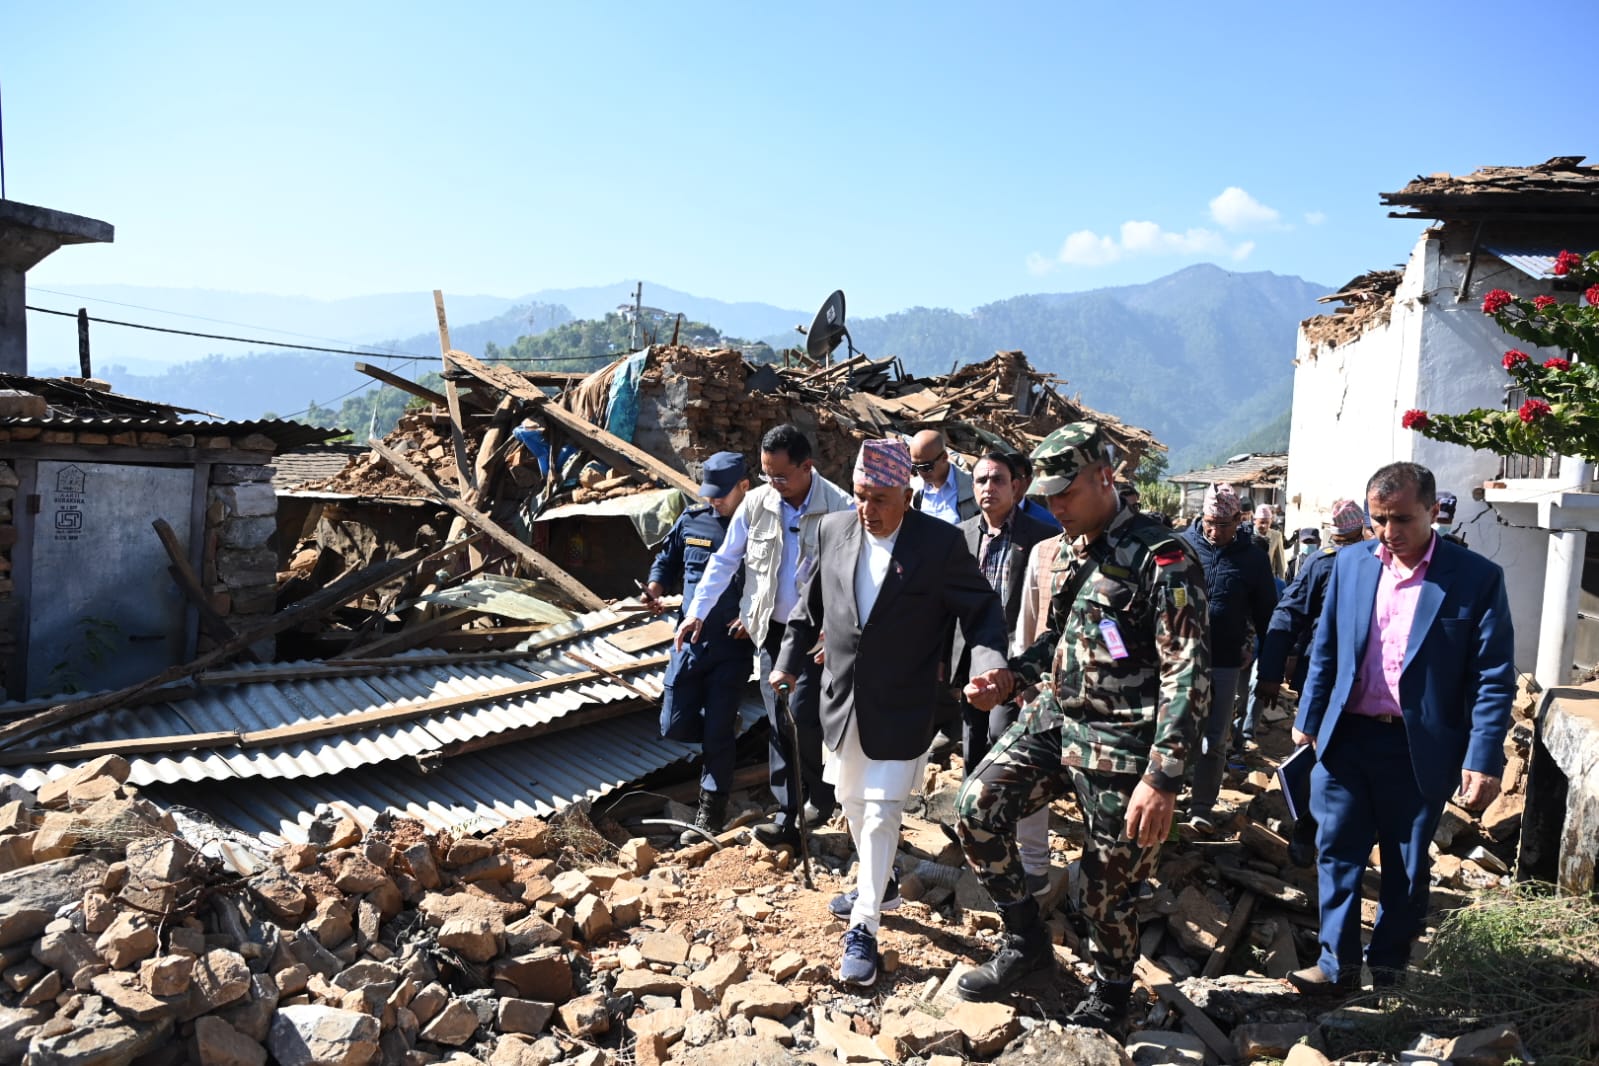 भूकम्पबाट भएको क्षतिप्रति दुःख व्यक्त गर्दै विभिन्न देशका राष्ट्र प्रमुखद्वारा समवेदना सन्देश